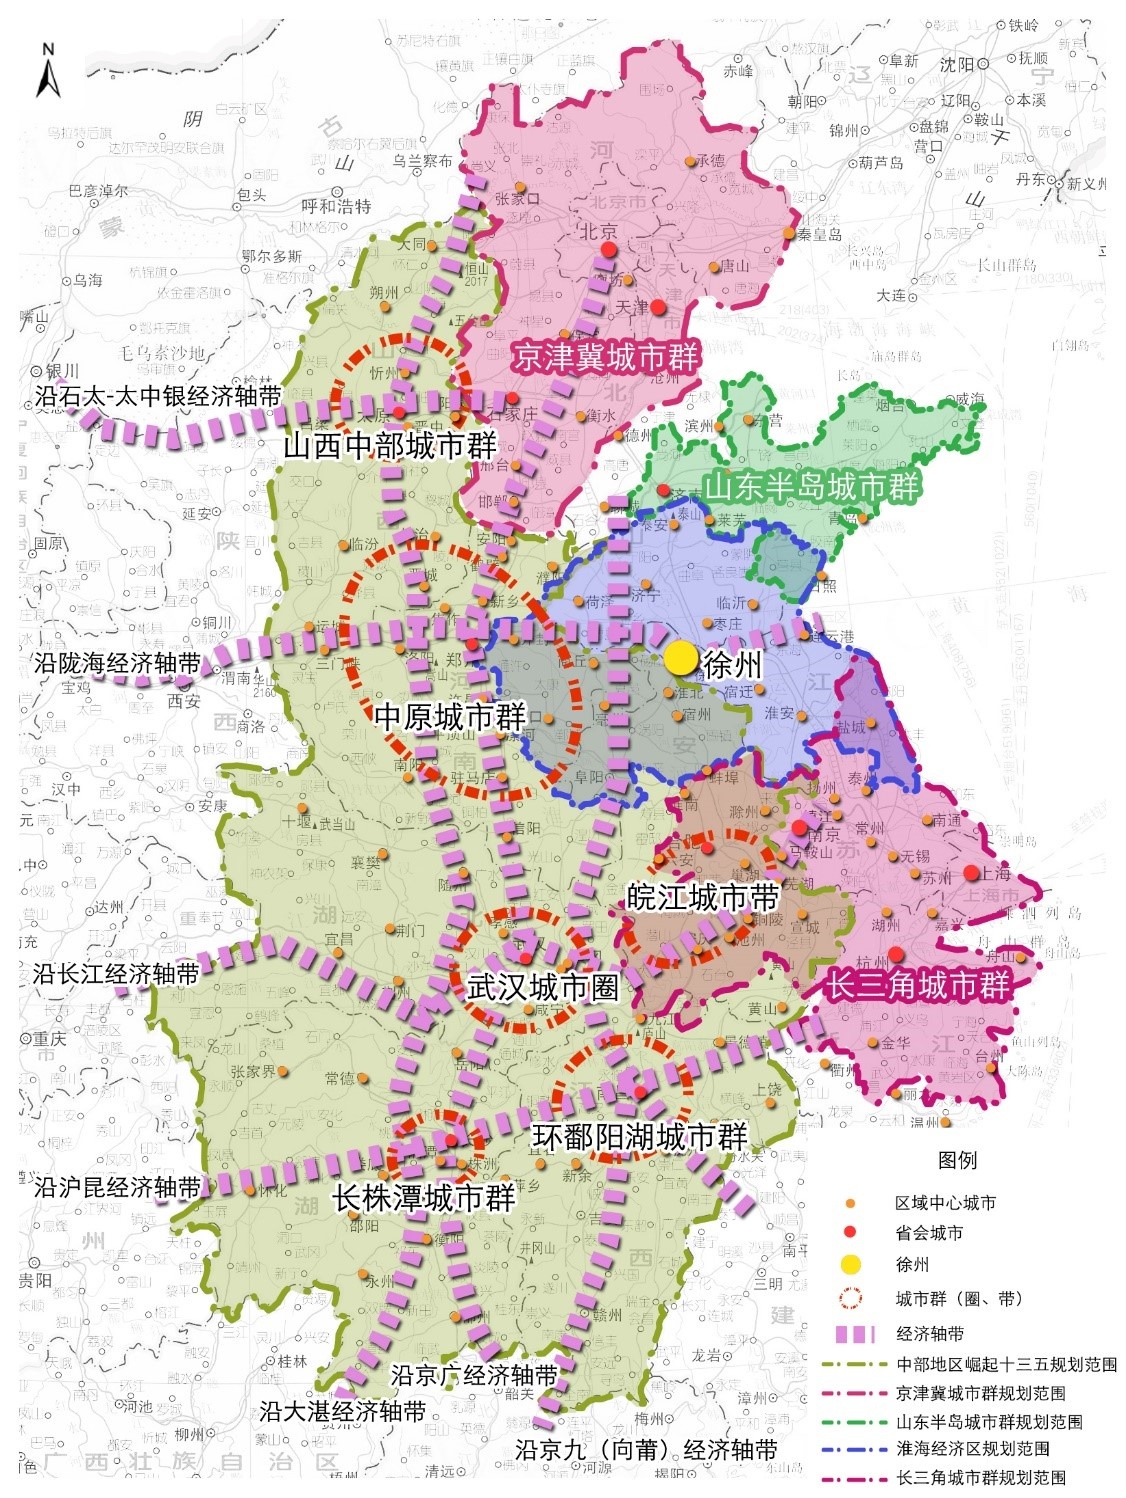 淮海城市群和周边城市群规划范围图